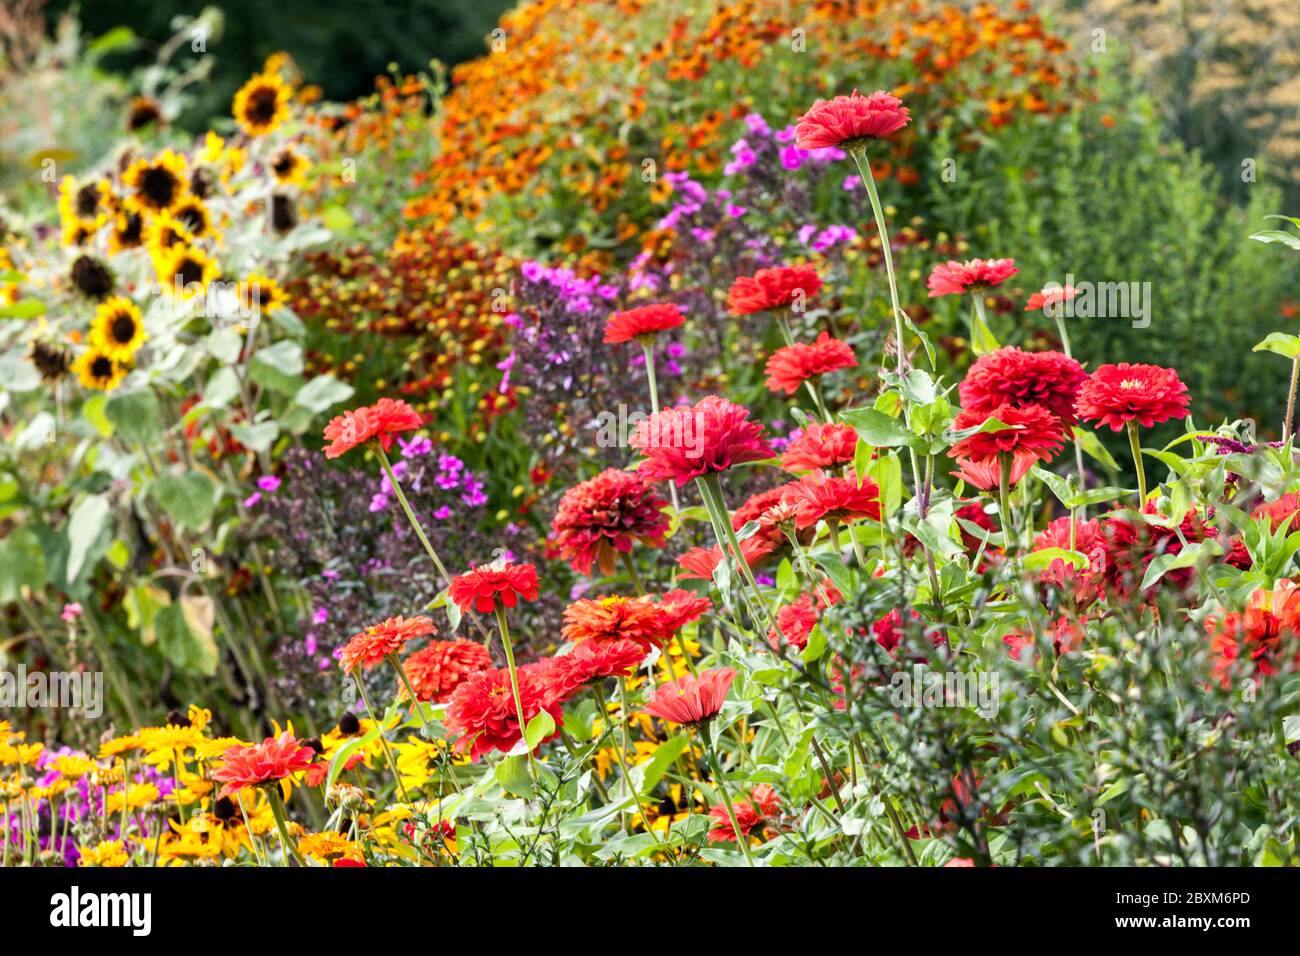 Jardin de fleurs colorées Red Zinnias tournesols bordure de parterre de fleurs d'été plantes d'août Banque D'Images